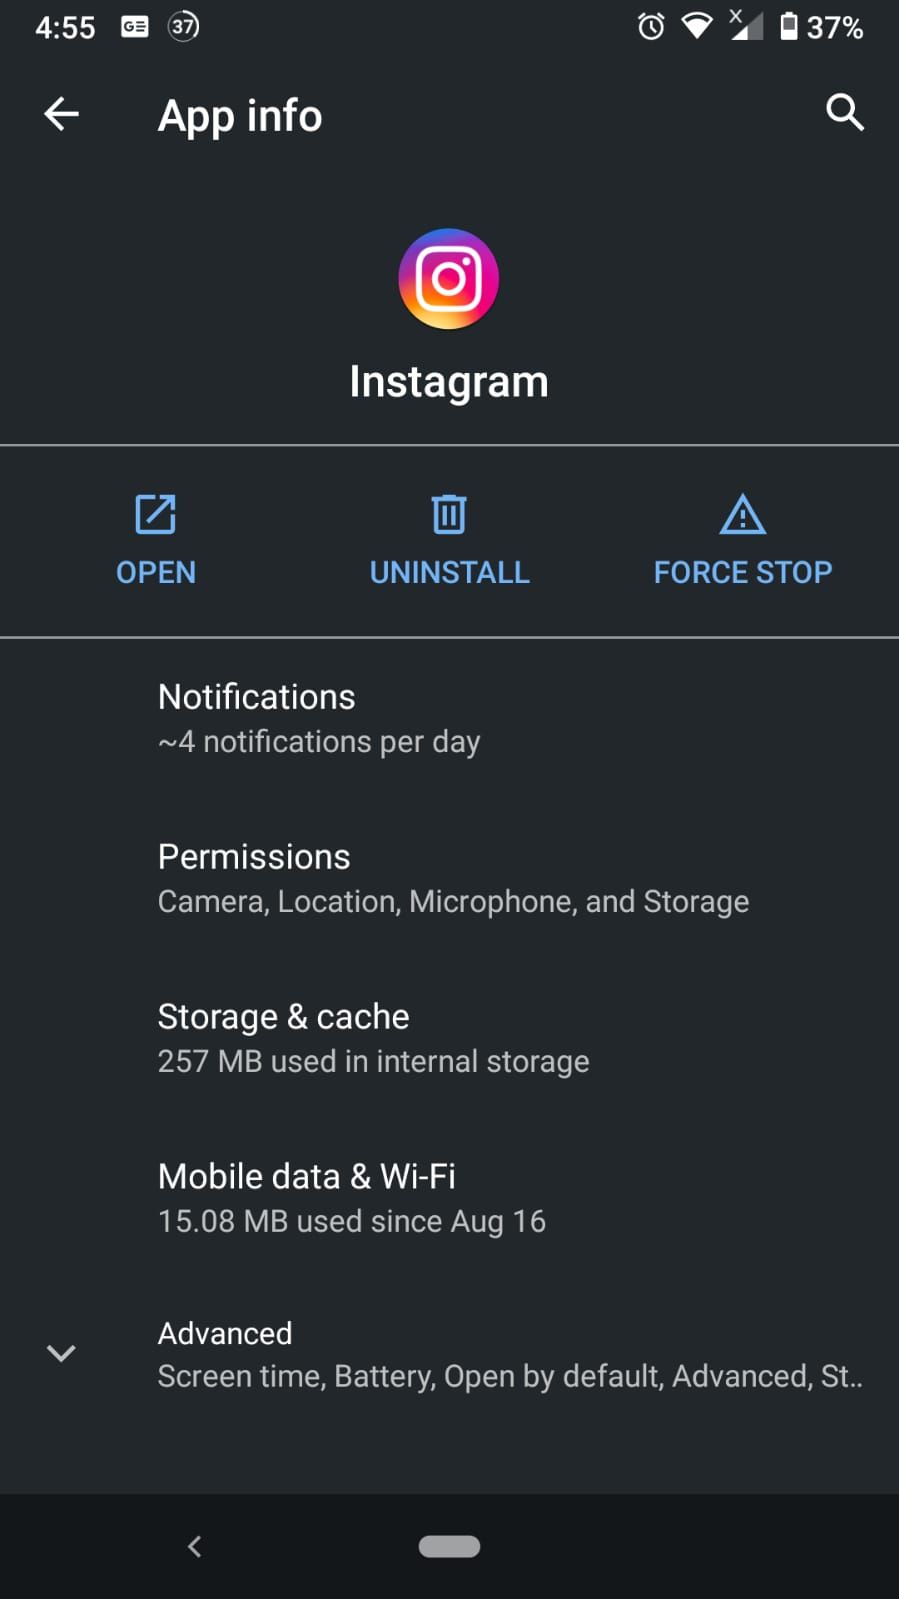 Instagram app setting main menu